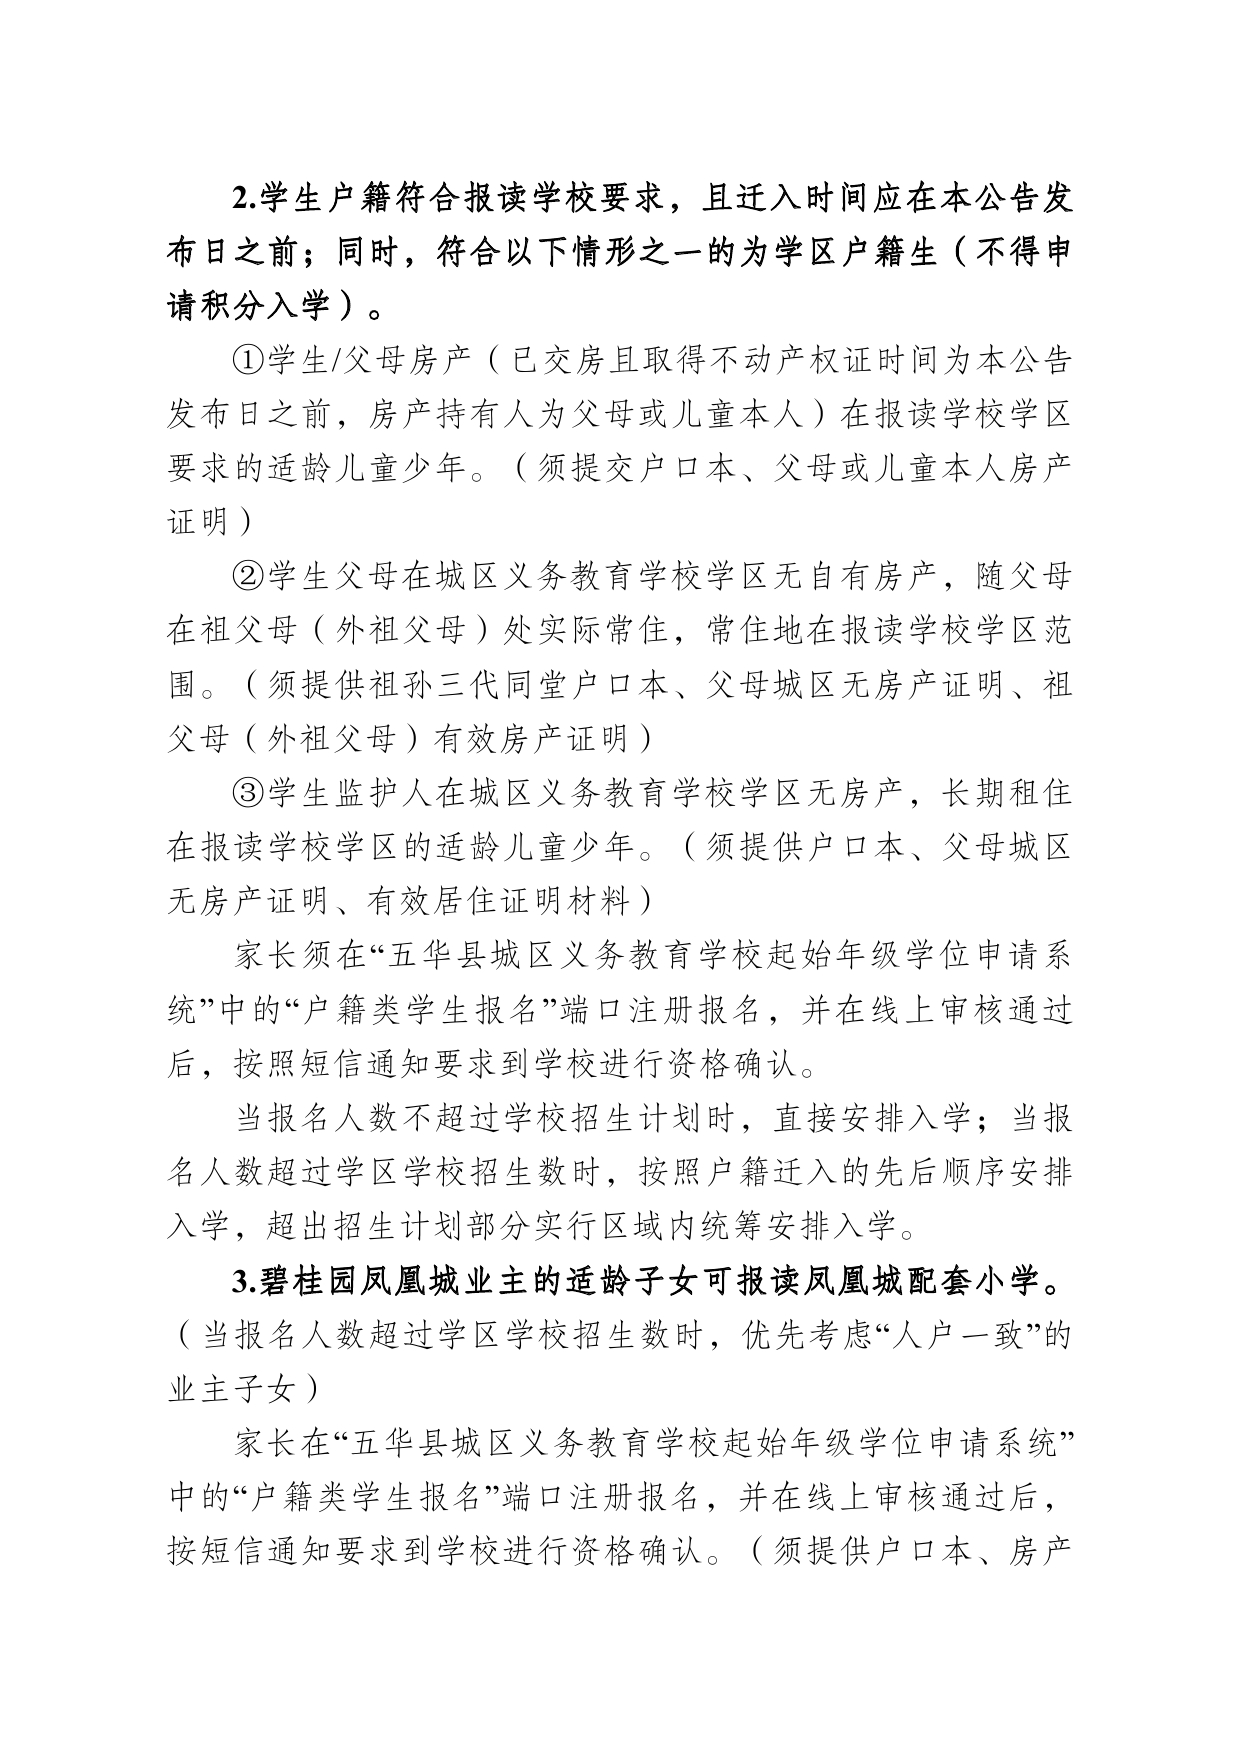 2022年秋季五华县城区义务教育公办学校招生公告0002.jpg